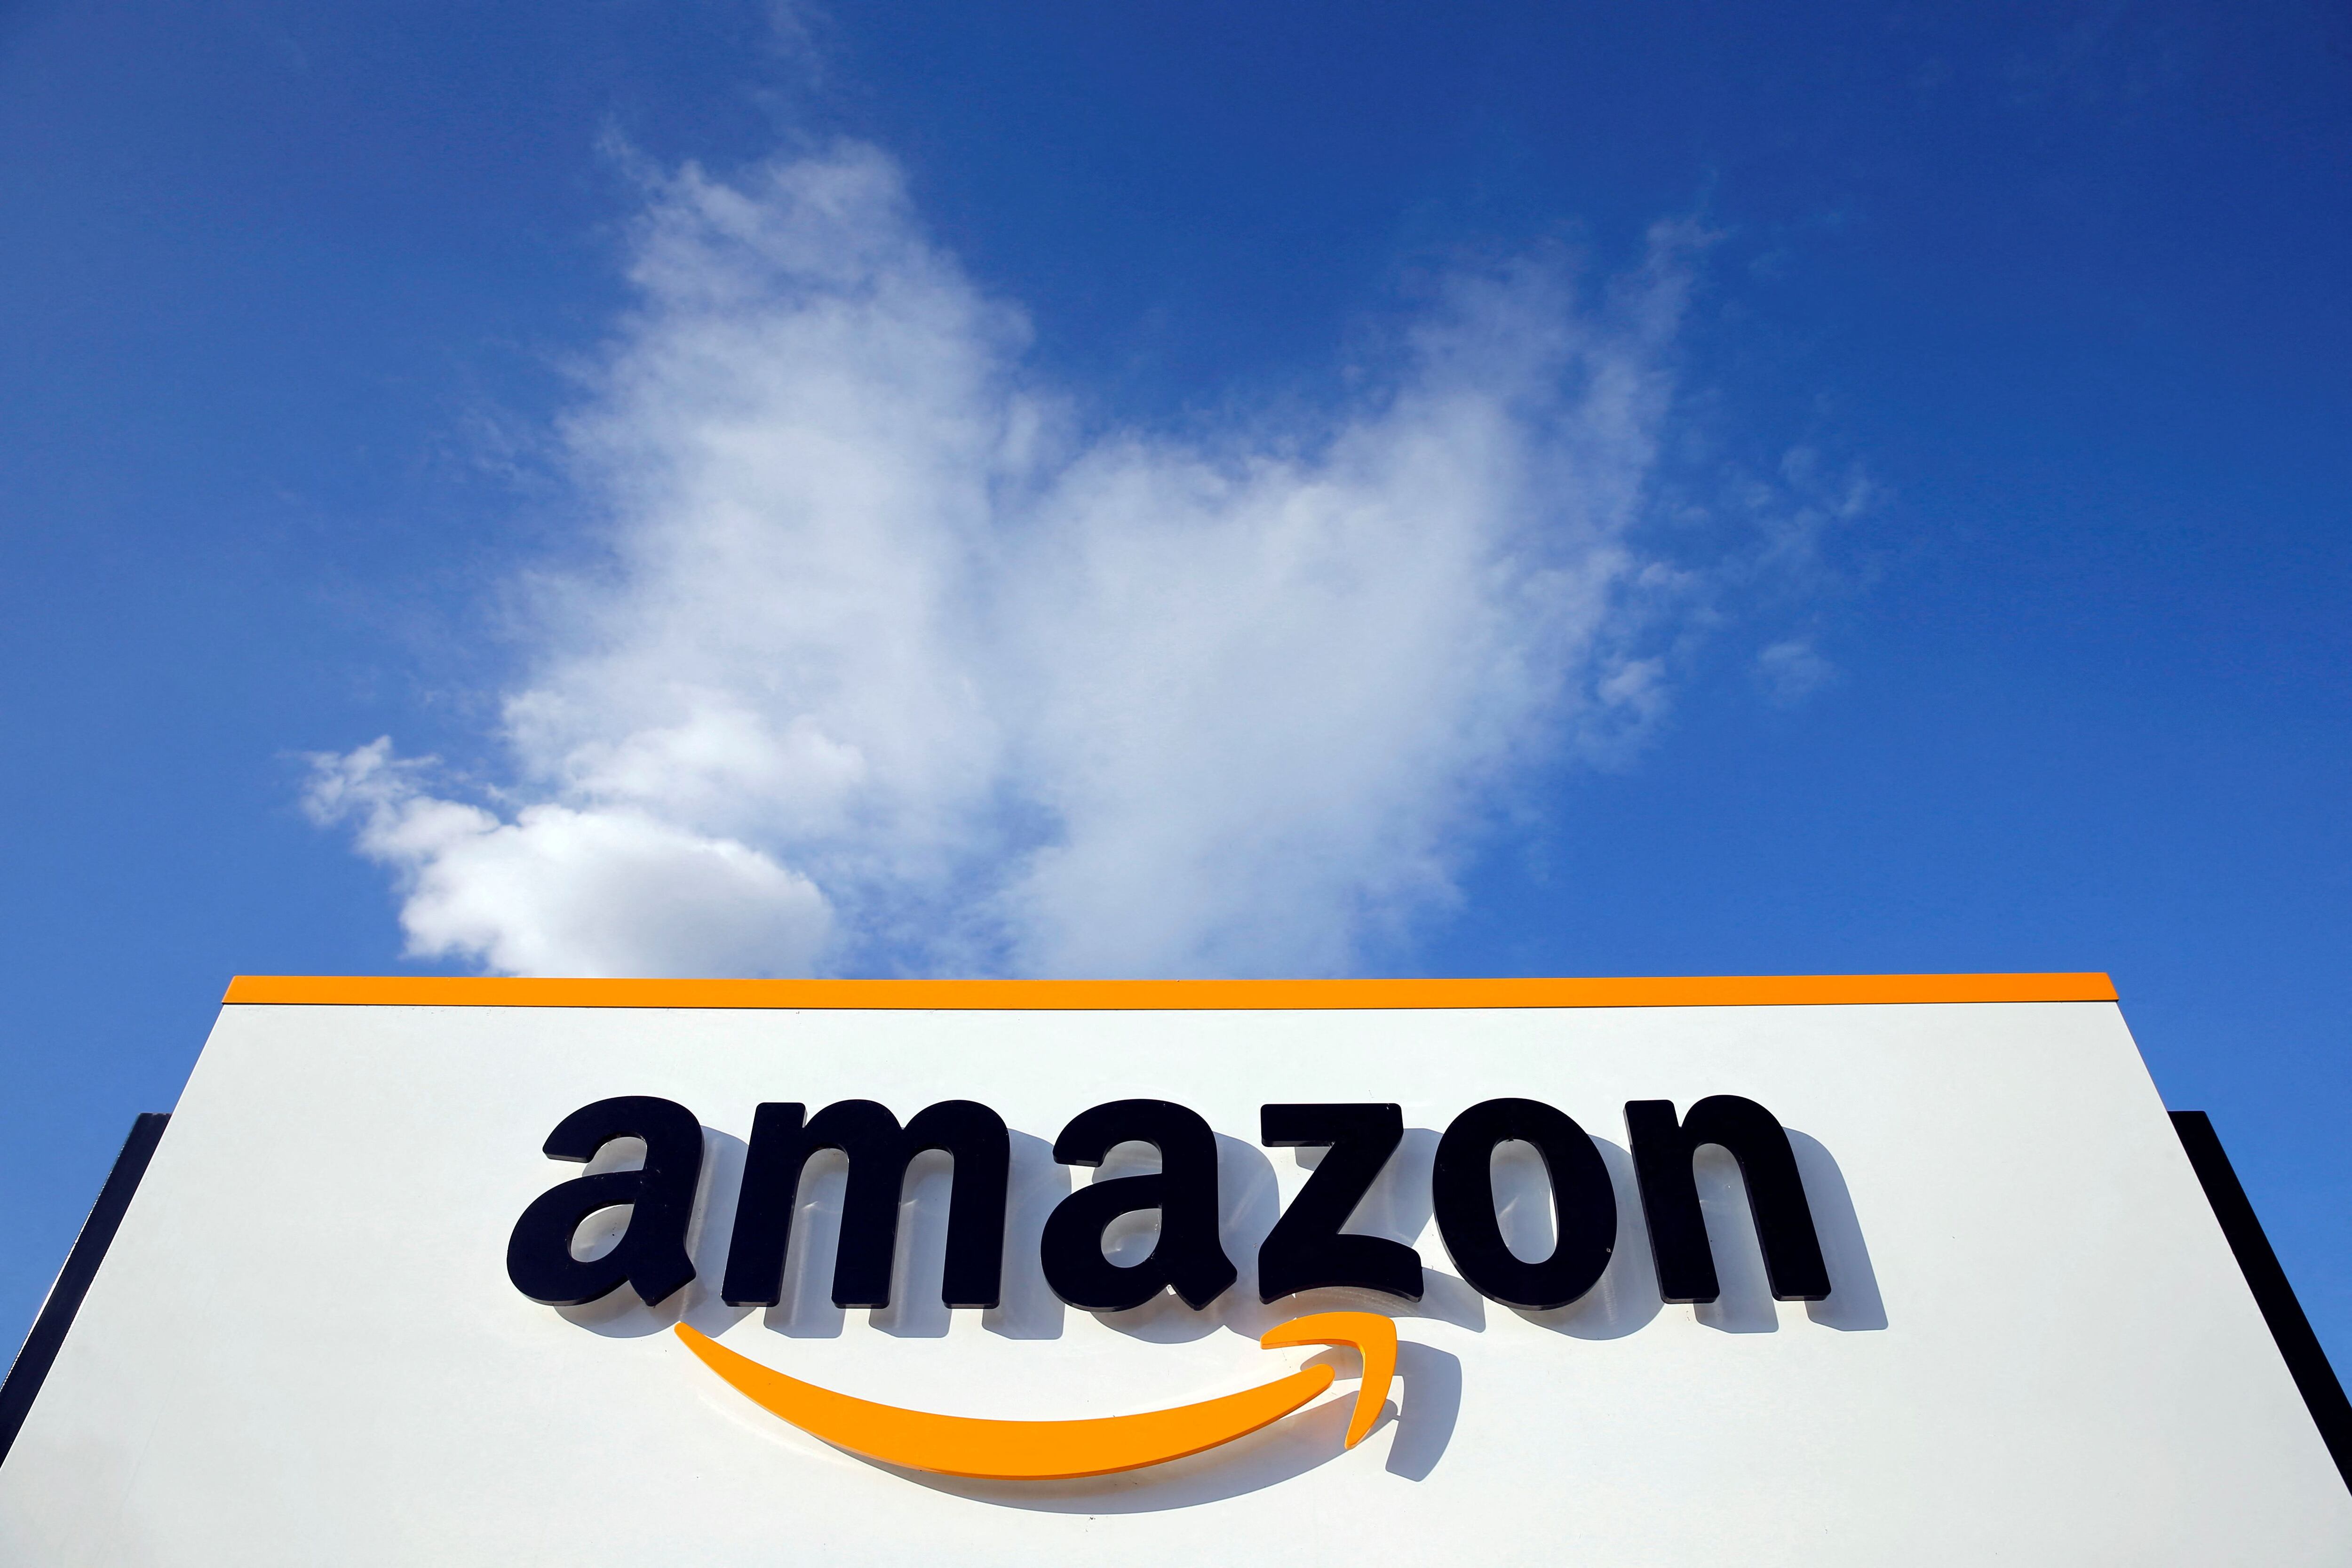 Amazon es una compañía estadounidense de comercio electrónico que también ha entrado a la batalla por el streaming con Prime Video. (REUTERS/Pascal Rossignol)